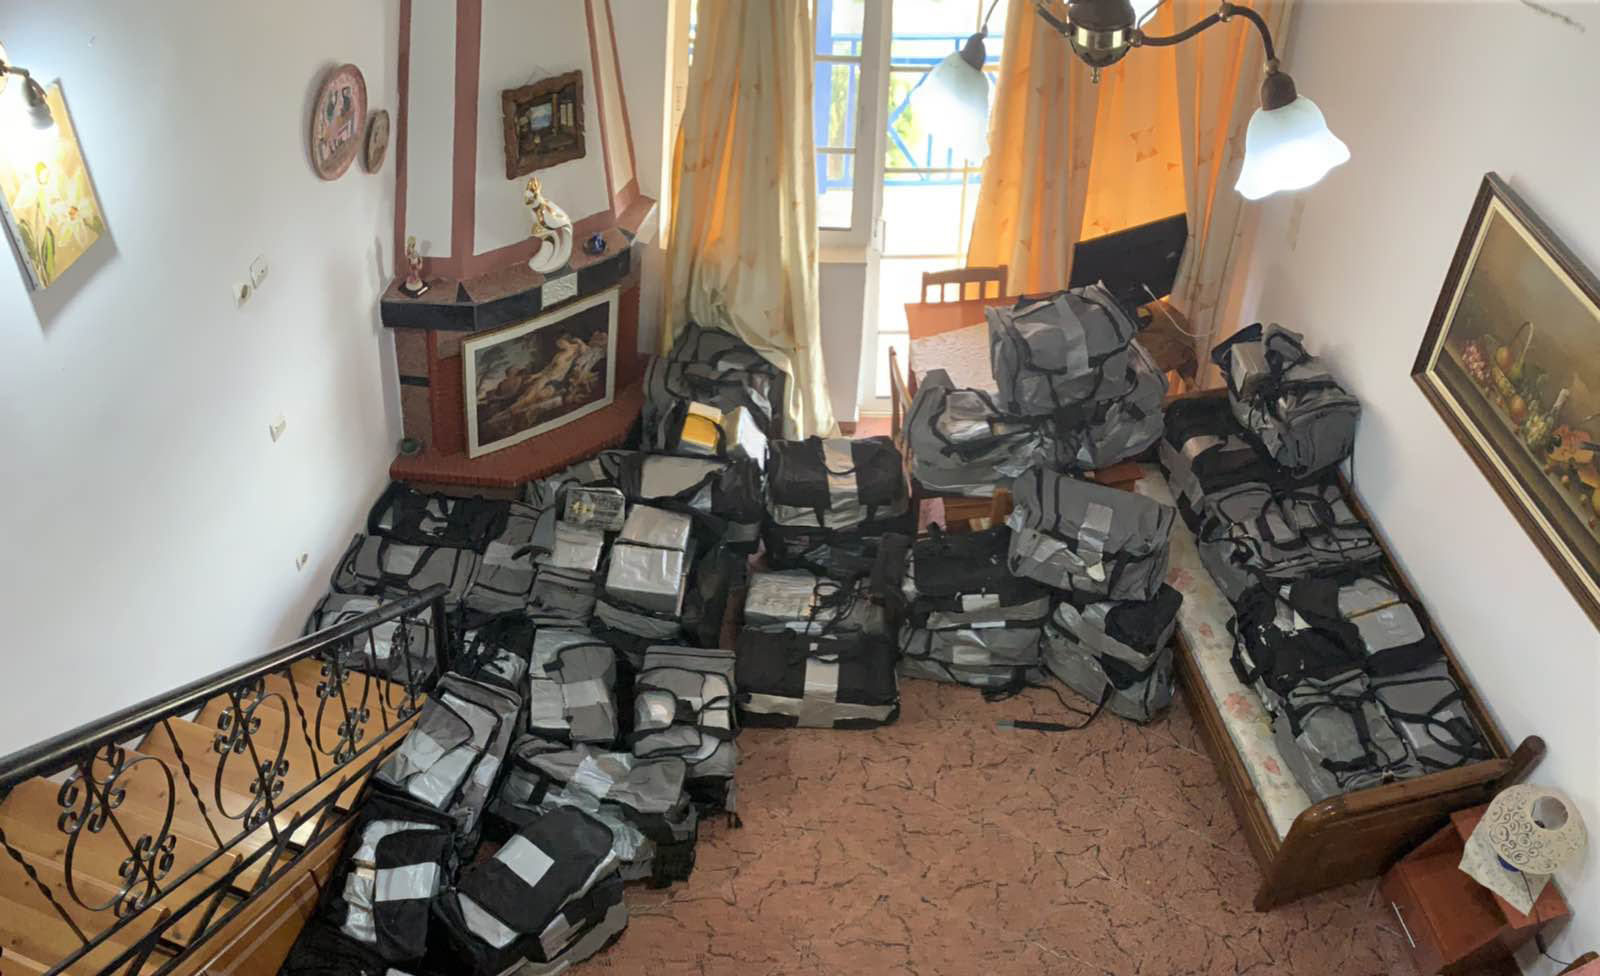 Αιτωλοακαρνανία: Μέσα στα ενοικιαζόμενα δωμάτια που ήταν γεμάτα όπλα και κοκαϊνη! Η εμπλοκή “γνωστών” κακοποιών [video]